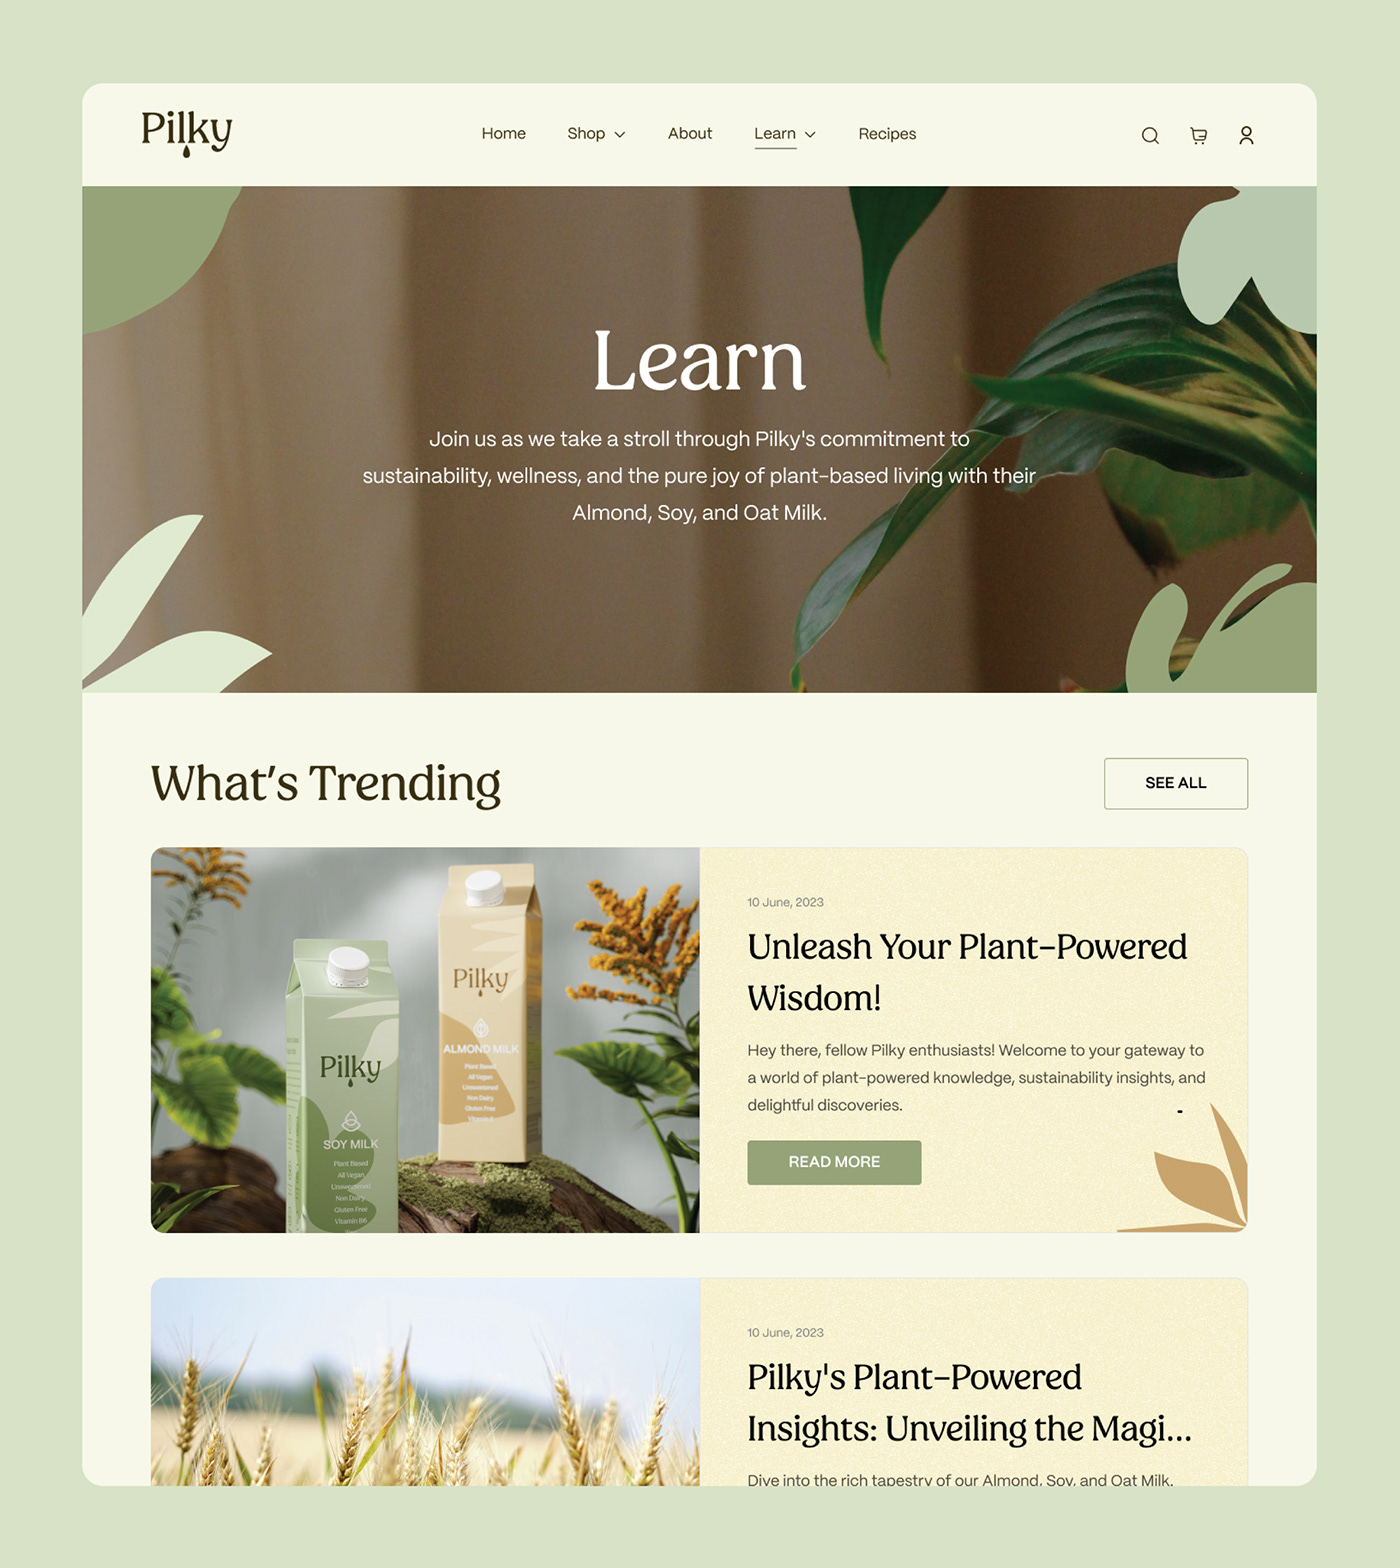 landing page Web Design  ui design Web designer drink milk vegan Web plan based branding 